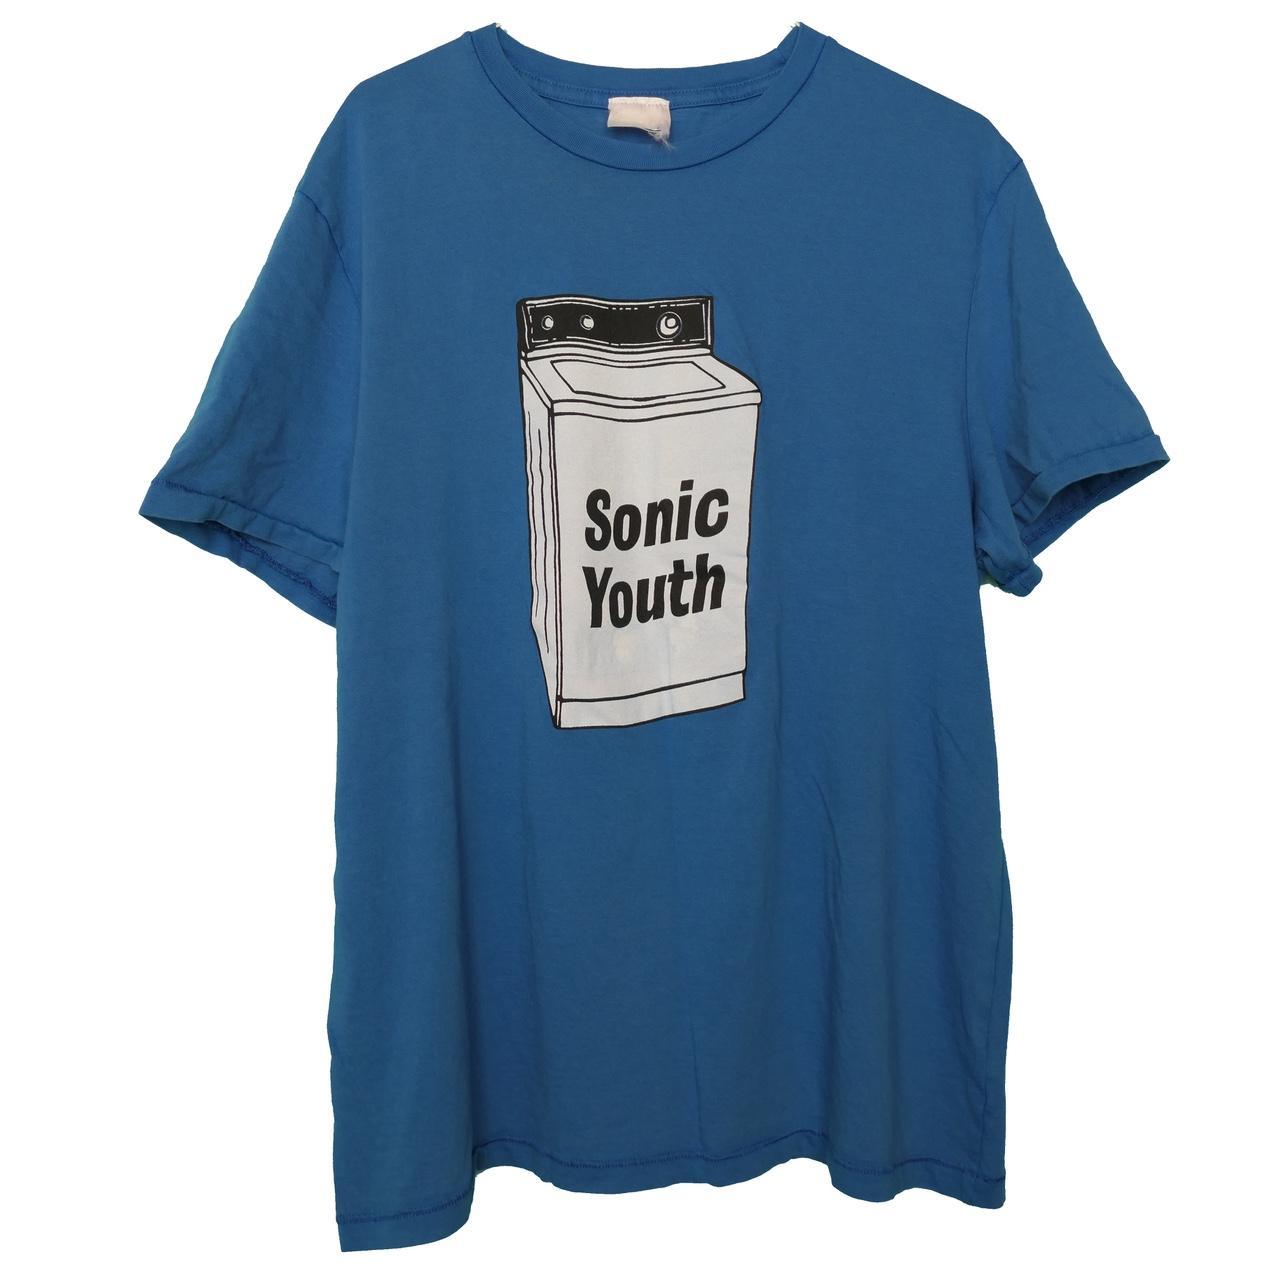 Sonic Youth Washing Machine Laundry Grunge Band Tour